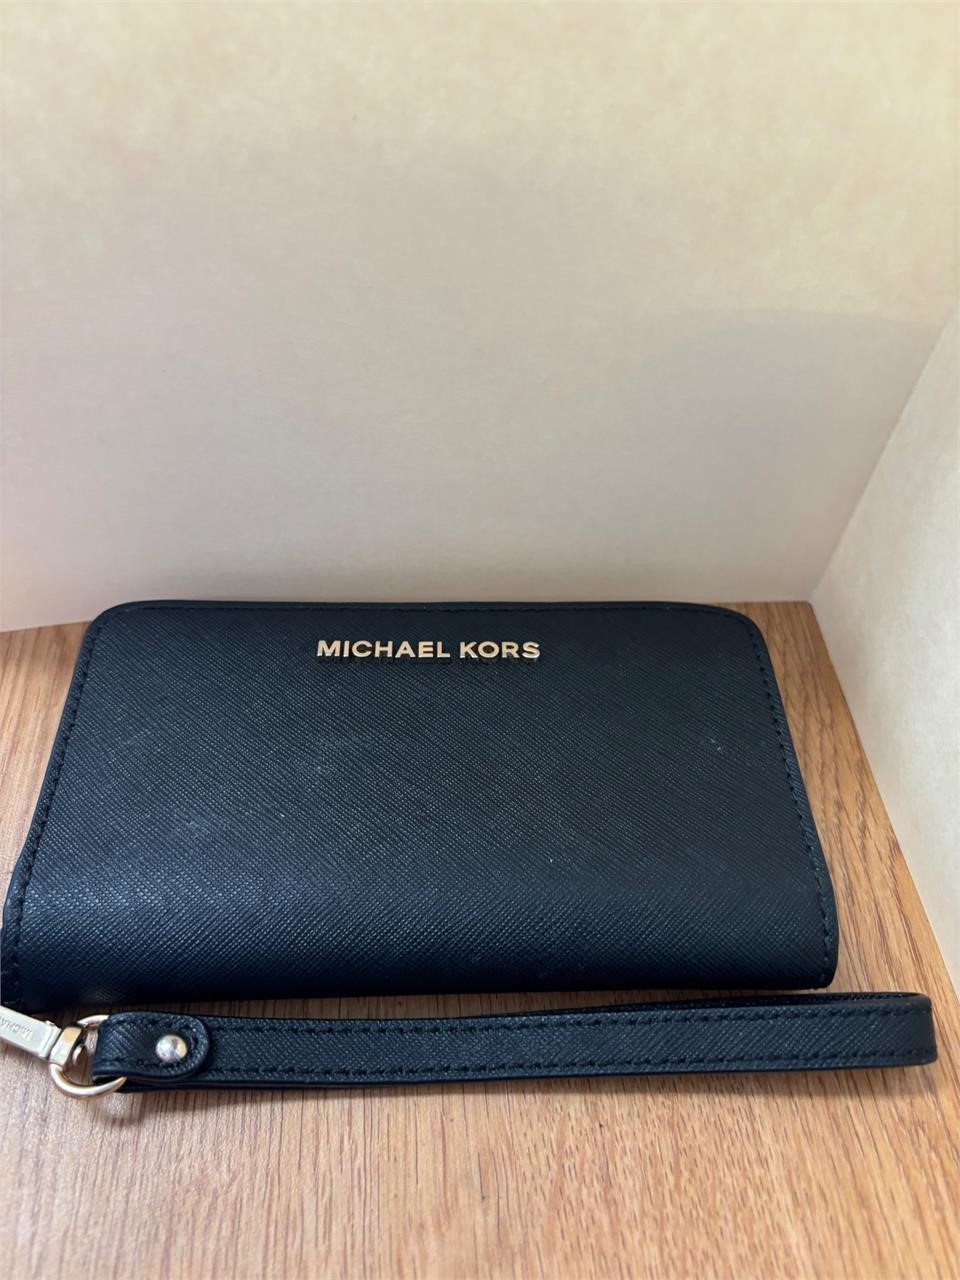 Authentic Michael Kors wallet / phone purse